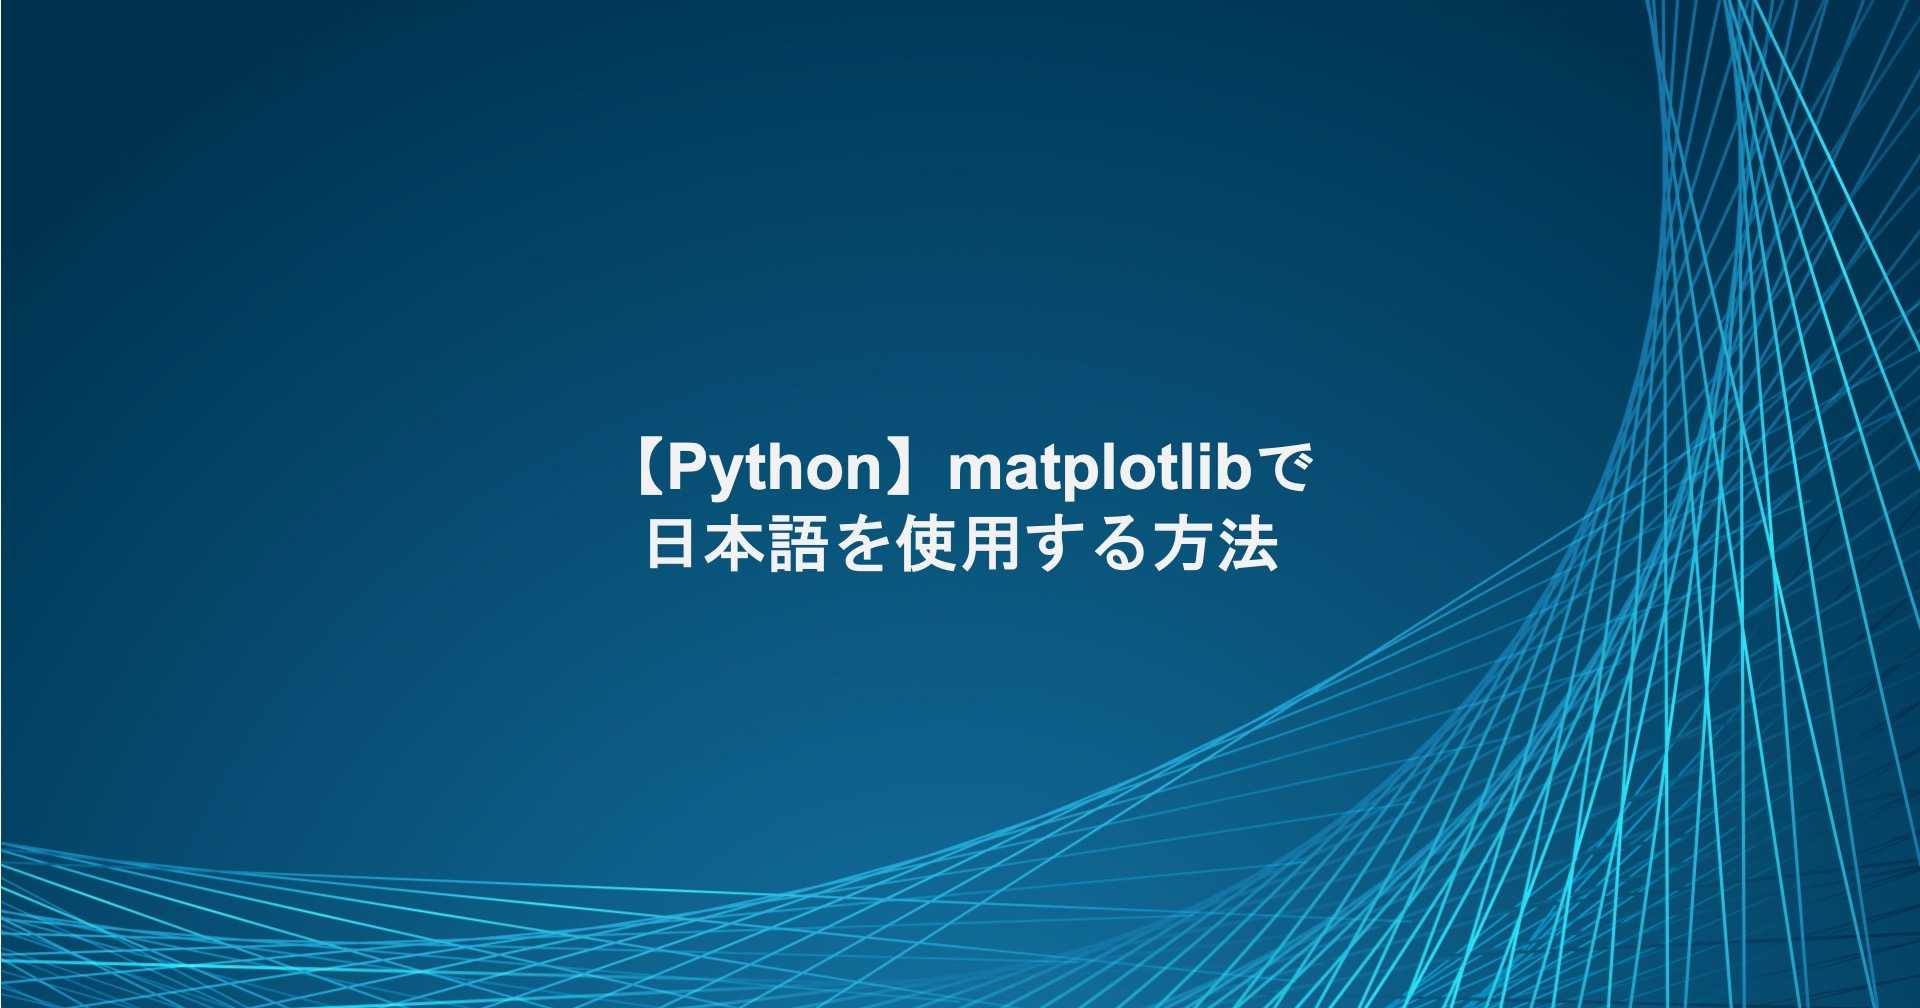 matplotlibで日本語